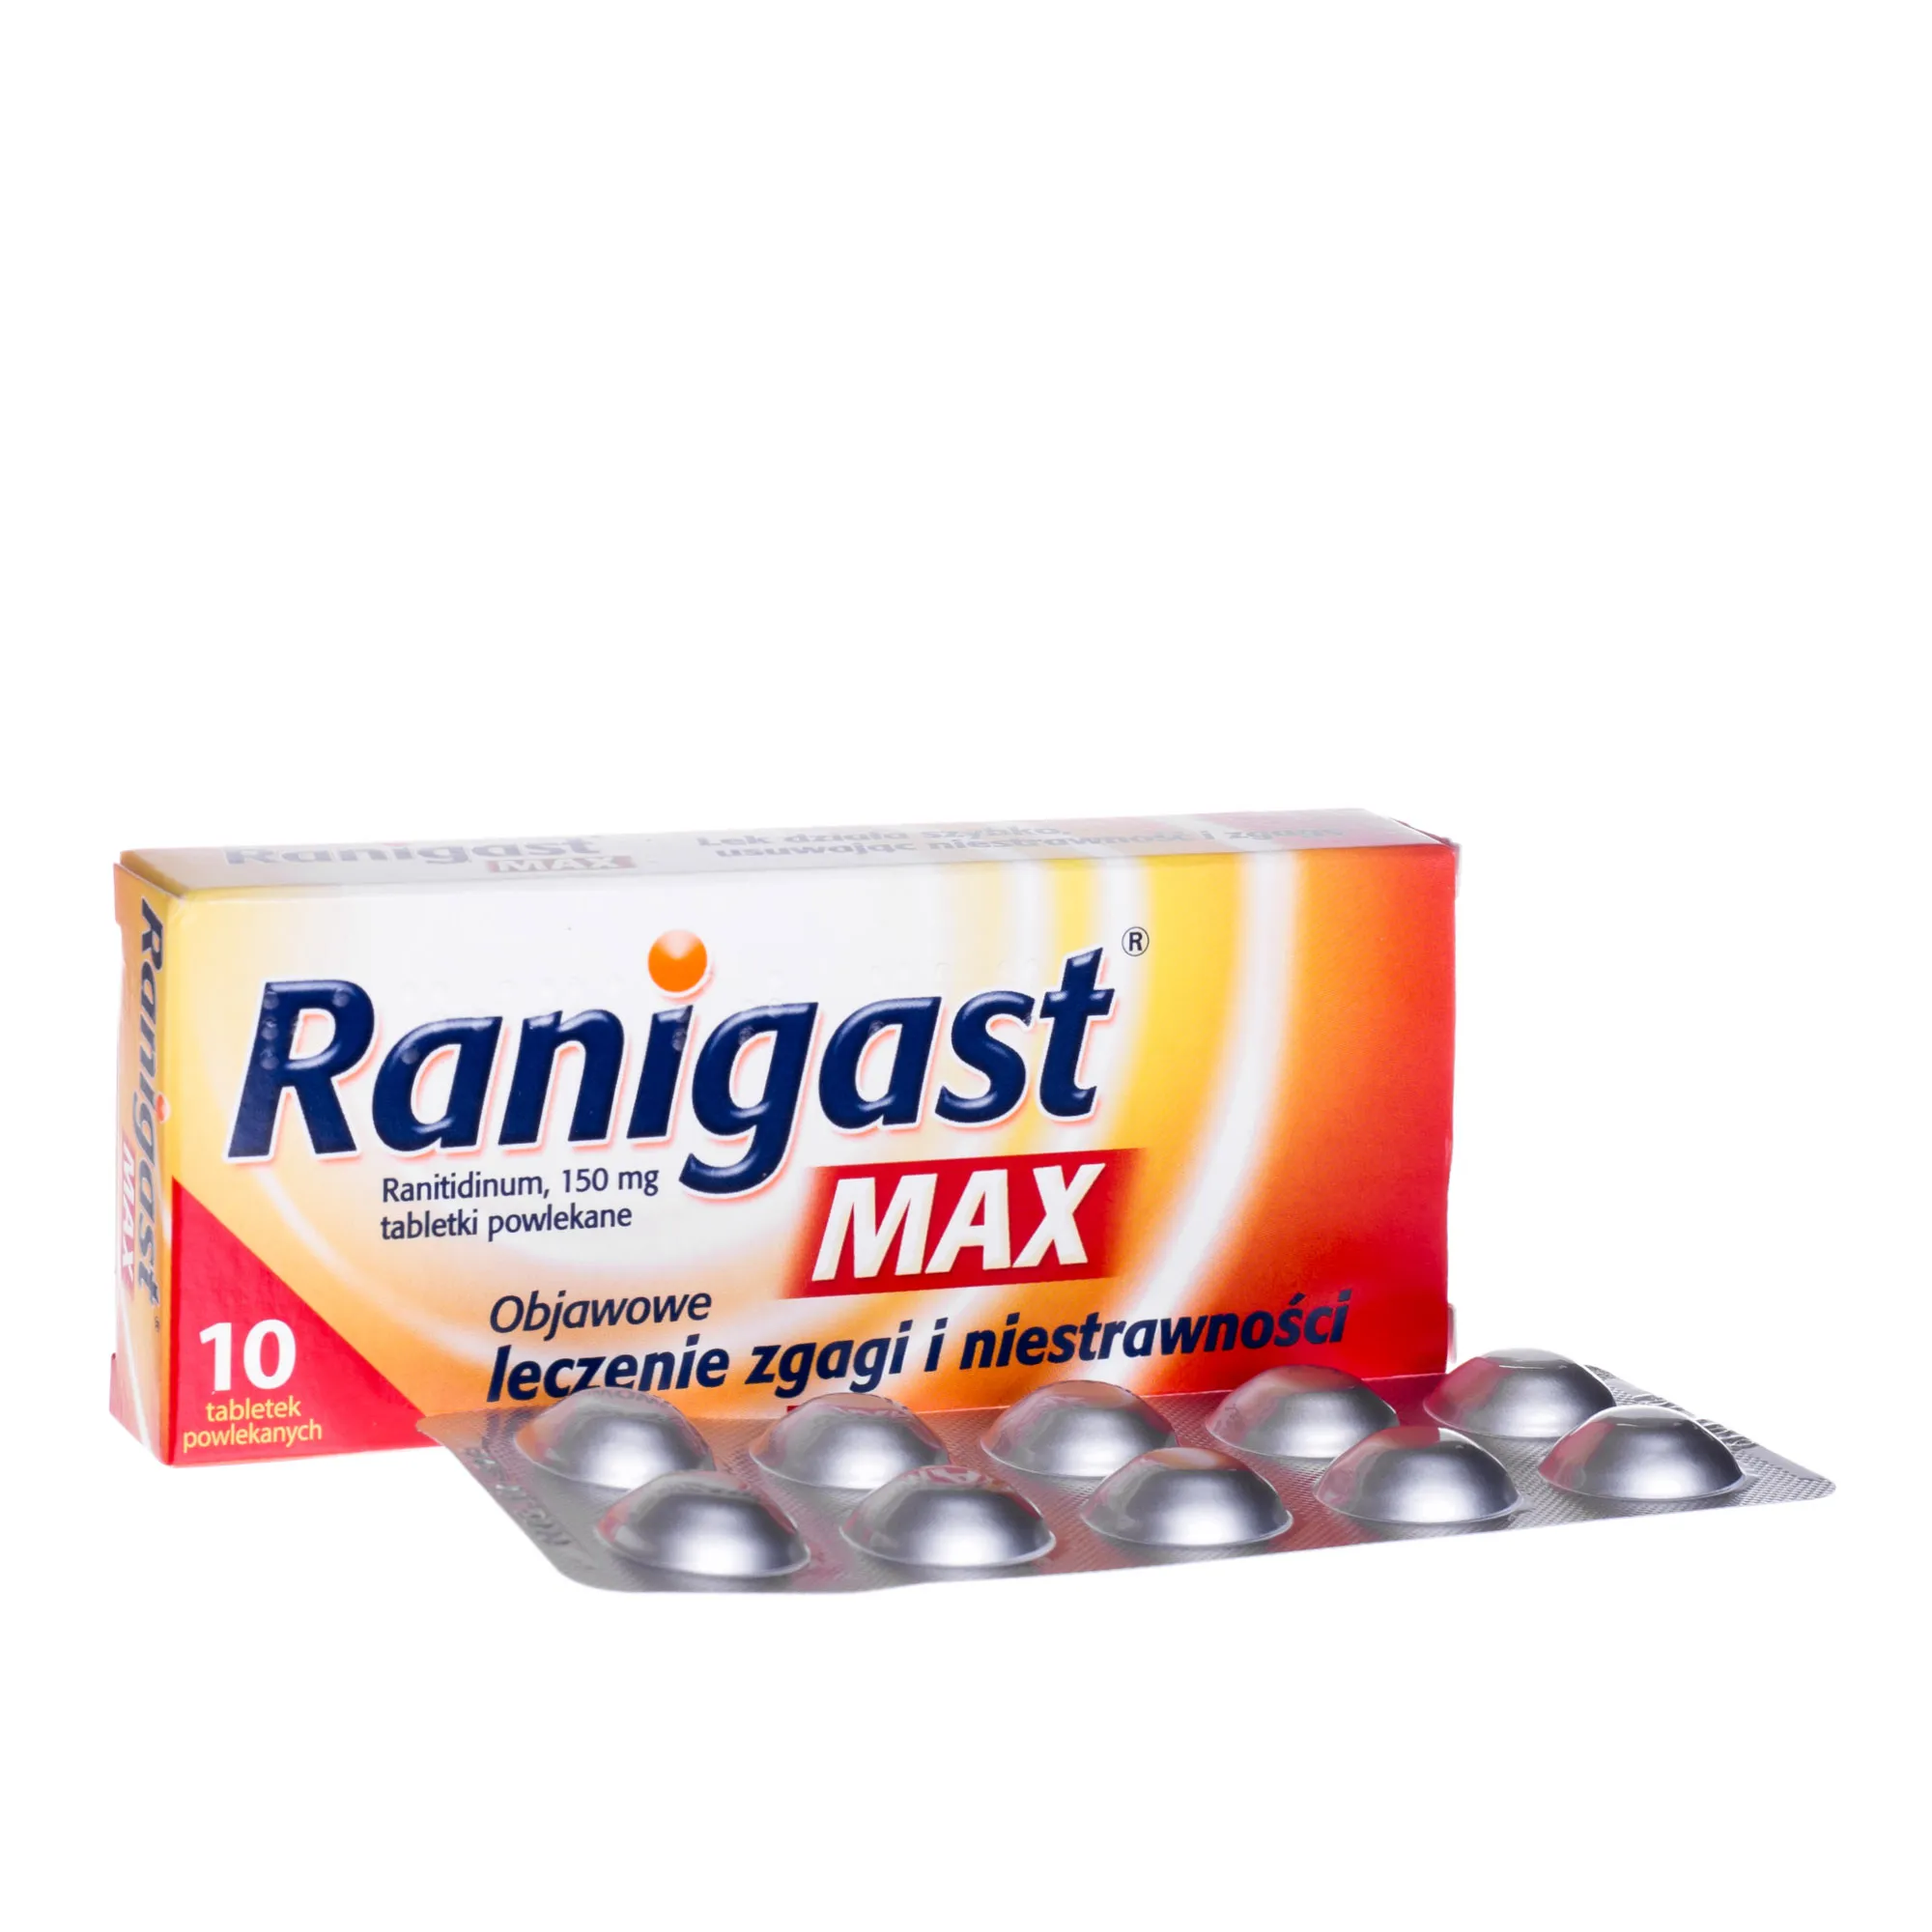 Ranigast Max 150 mg - 10 tabetek powlekanych stosowanych przy leczeniu zgagi i niestrawności